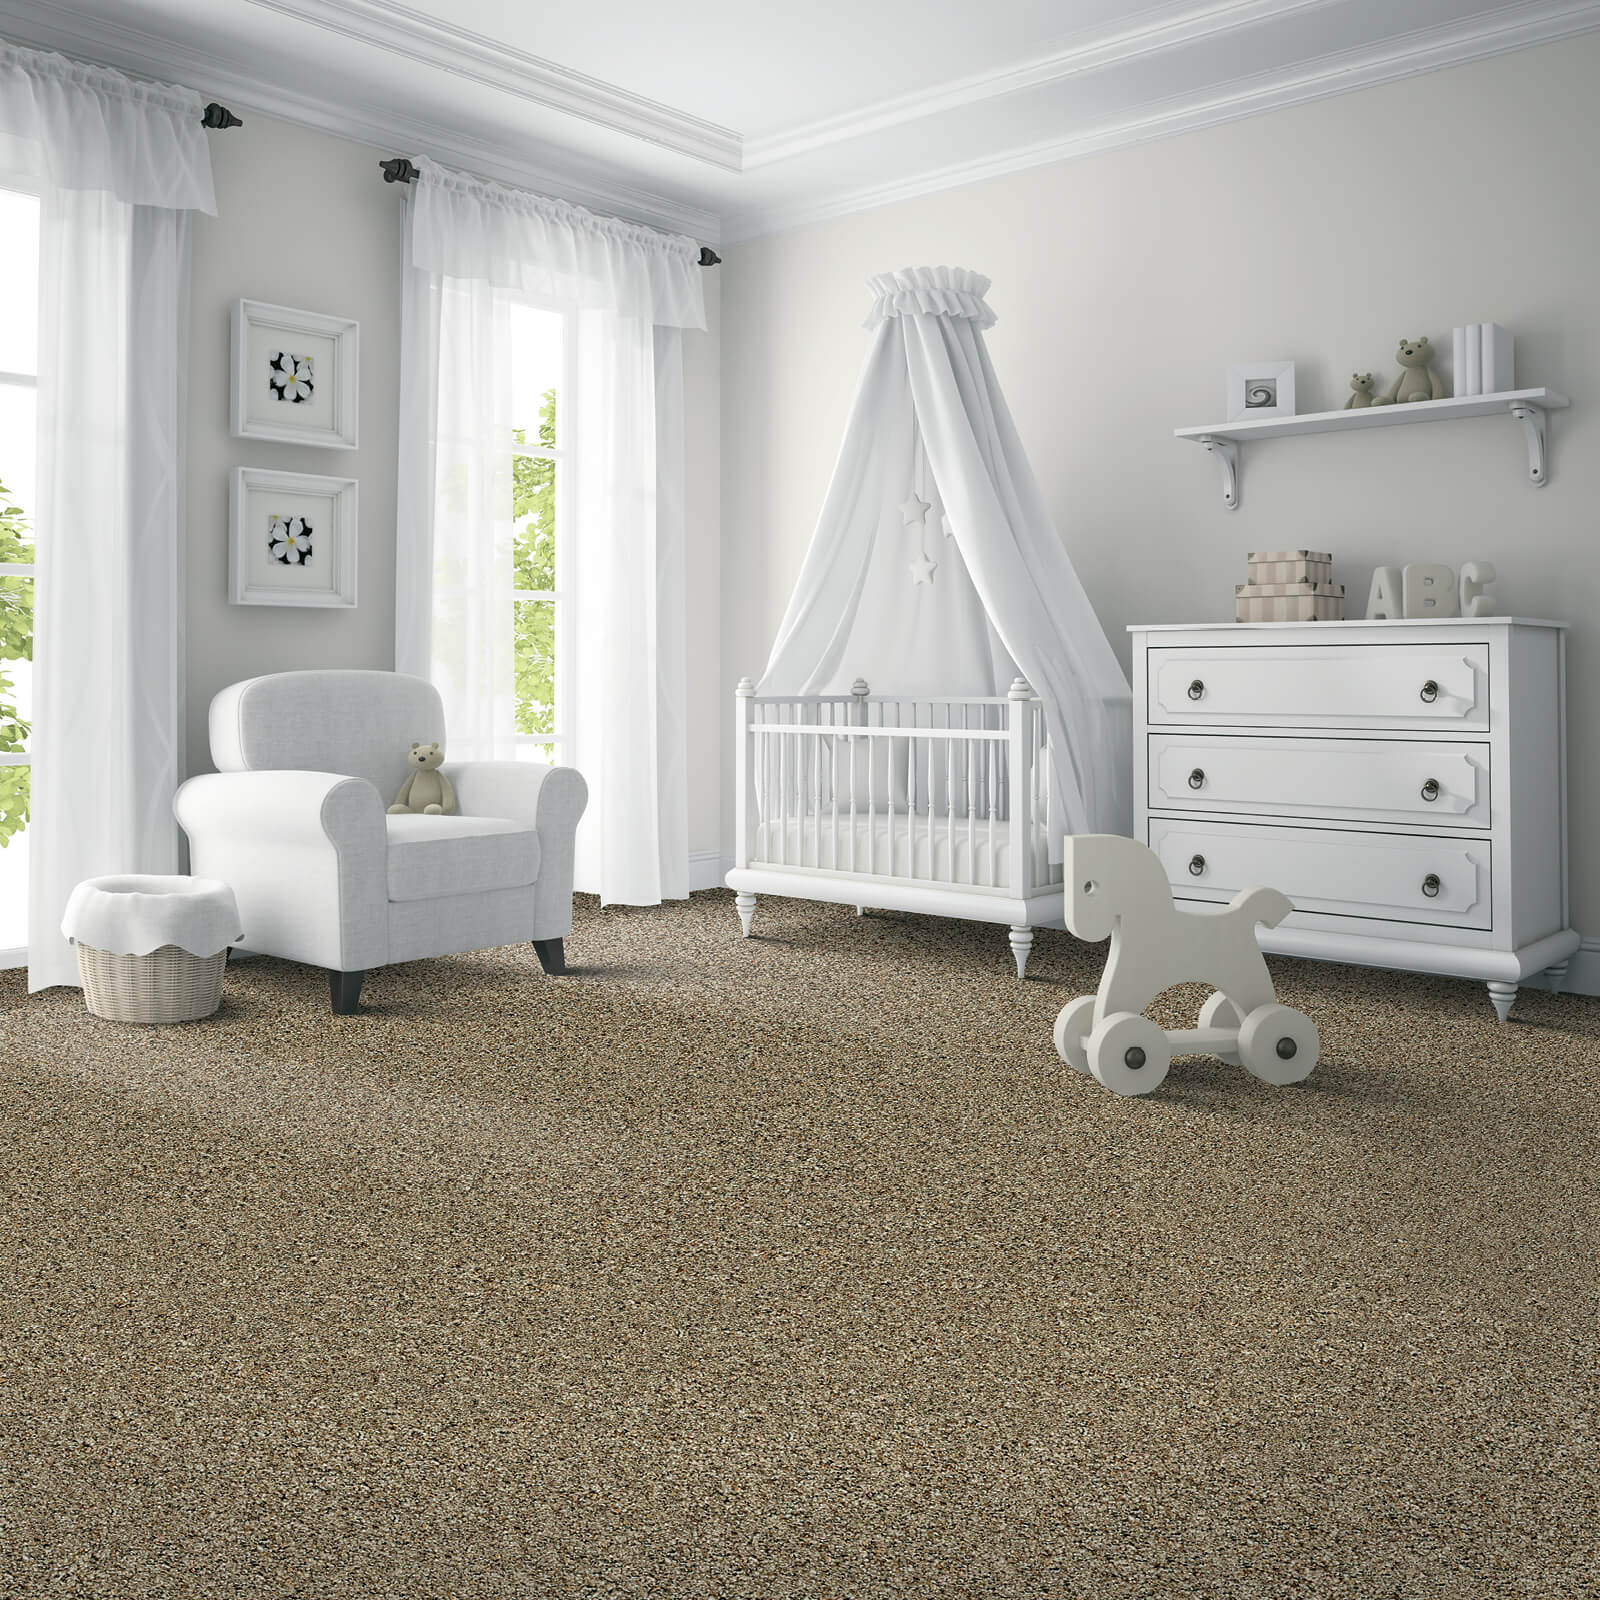 Carpeting in Nursery | Rockwall Floor and Paint